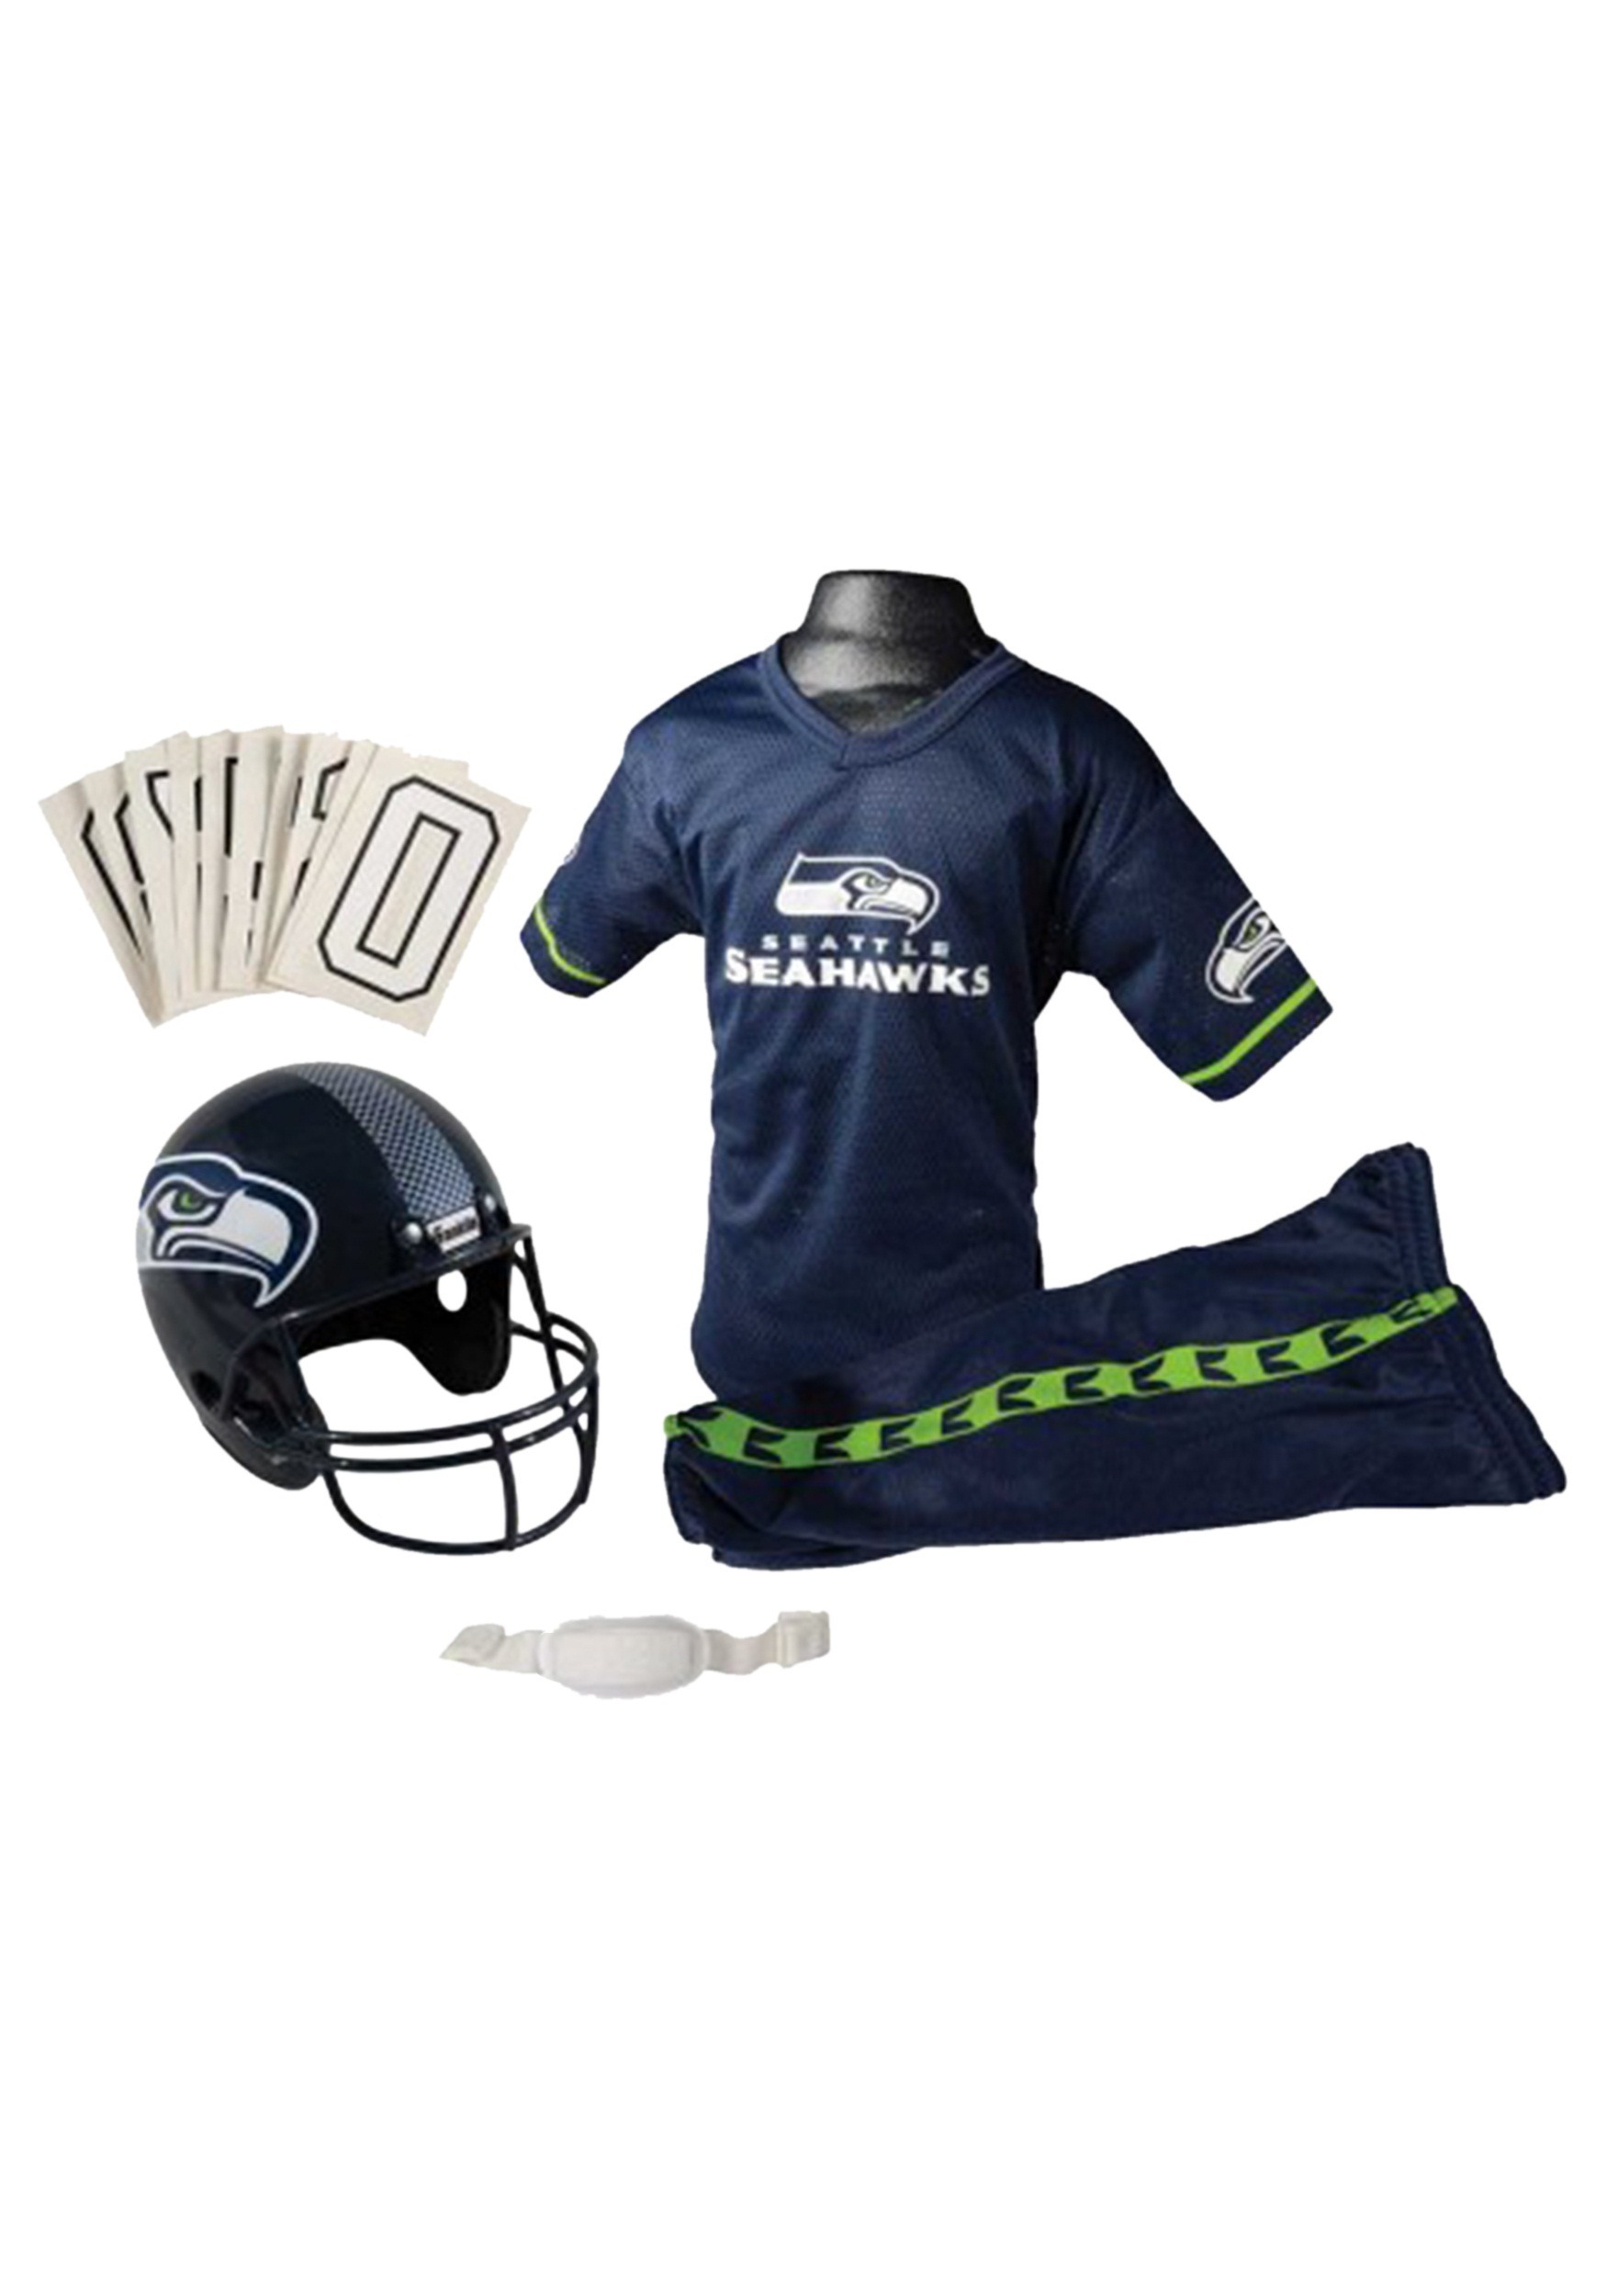 Franklin Sports Denver Broncos Kids NFL Uniform Set - Youth NFL Team  Jersey, Helmet + Apparel Costume - Official NFL Gear